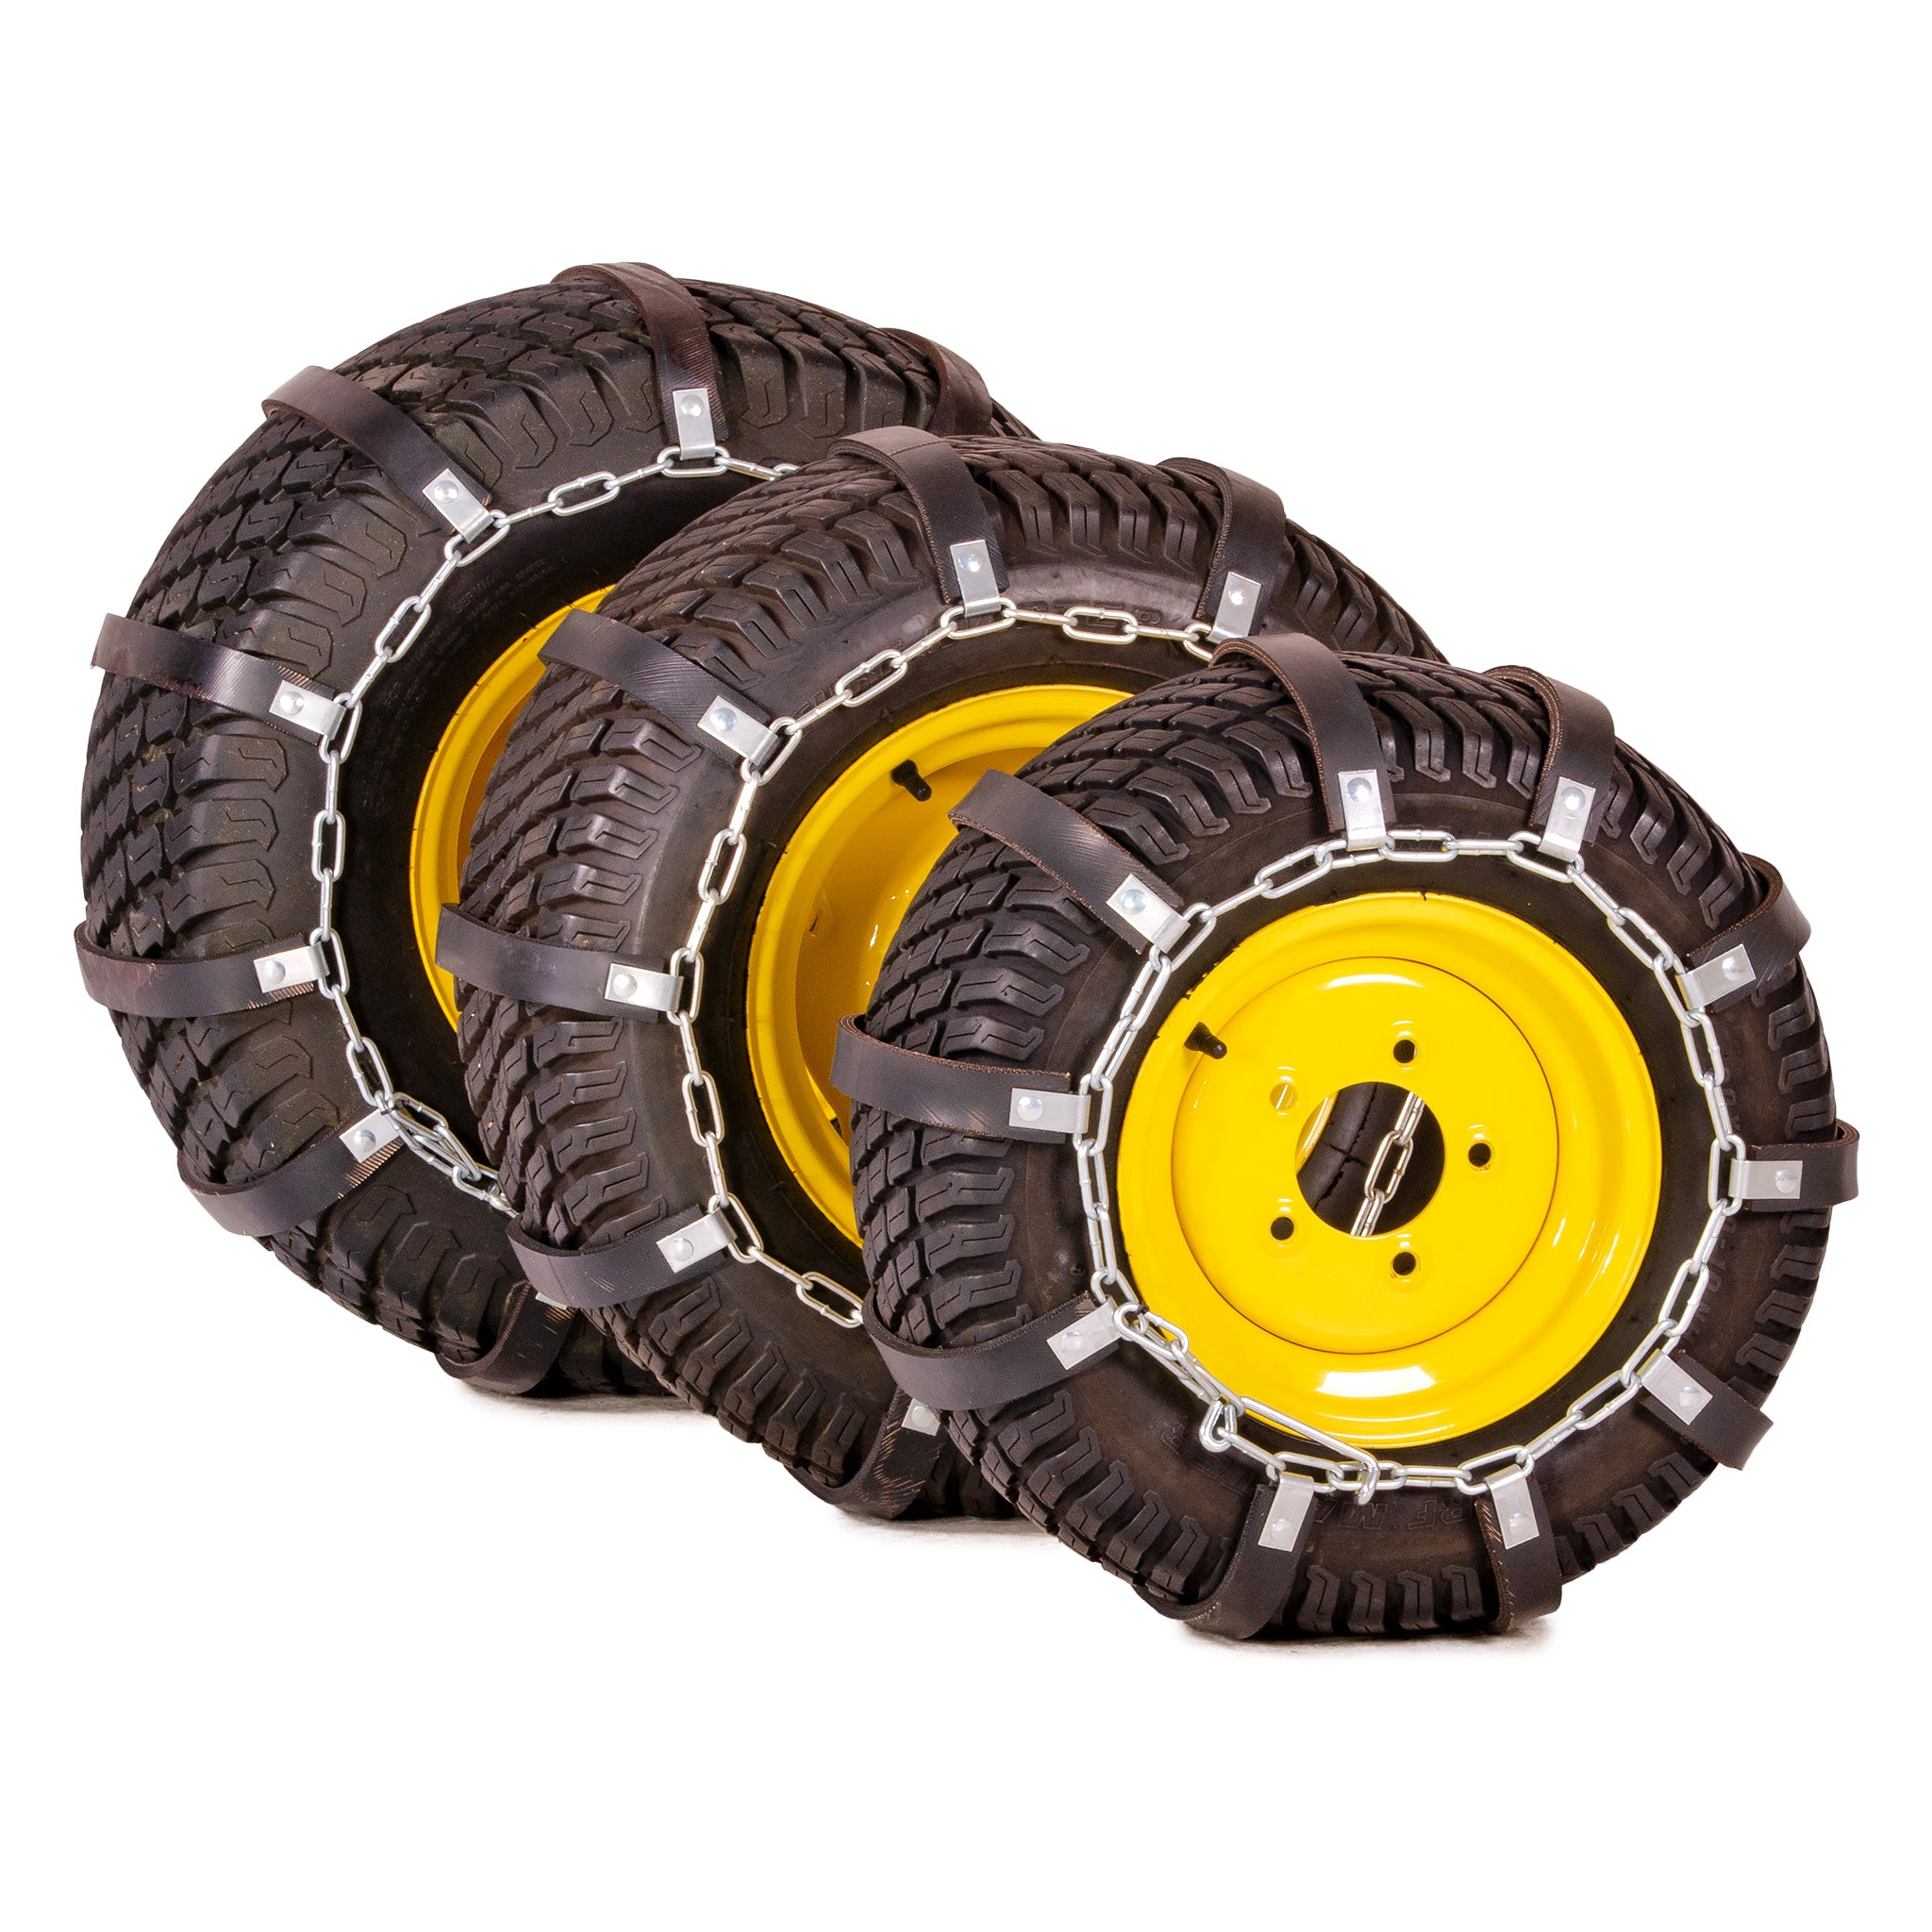 Tire Chains For John Deere Garden Tractors